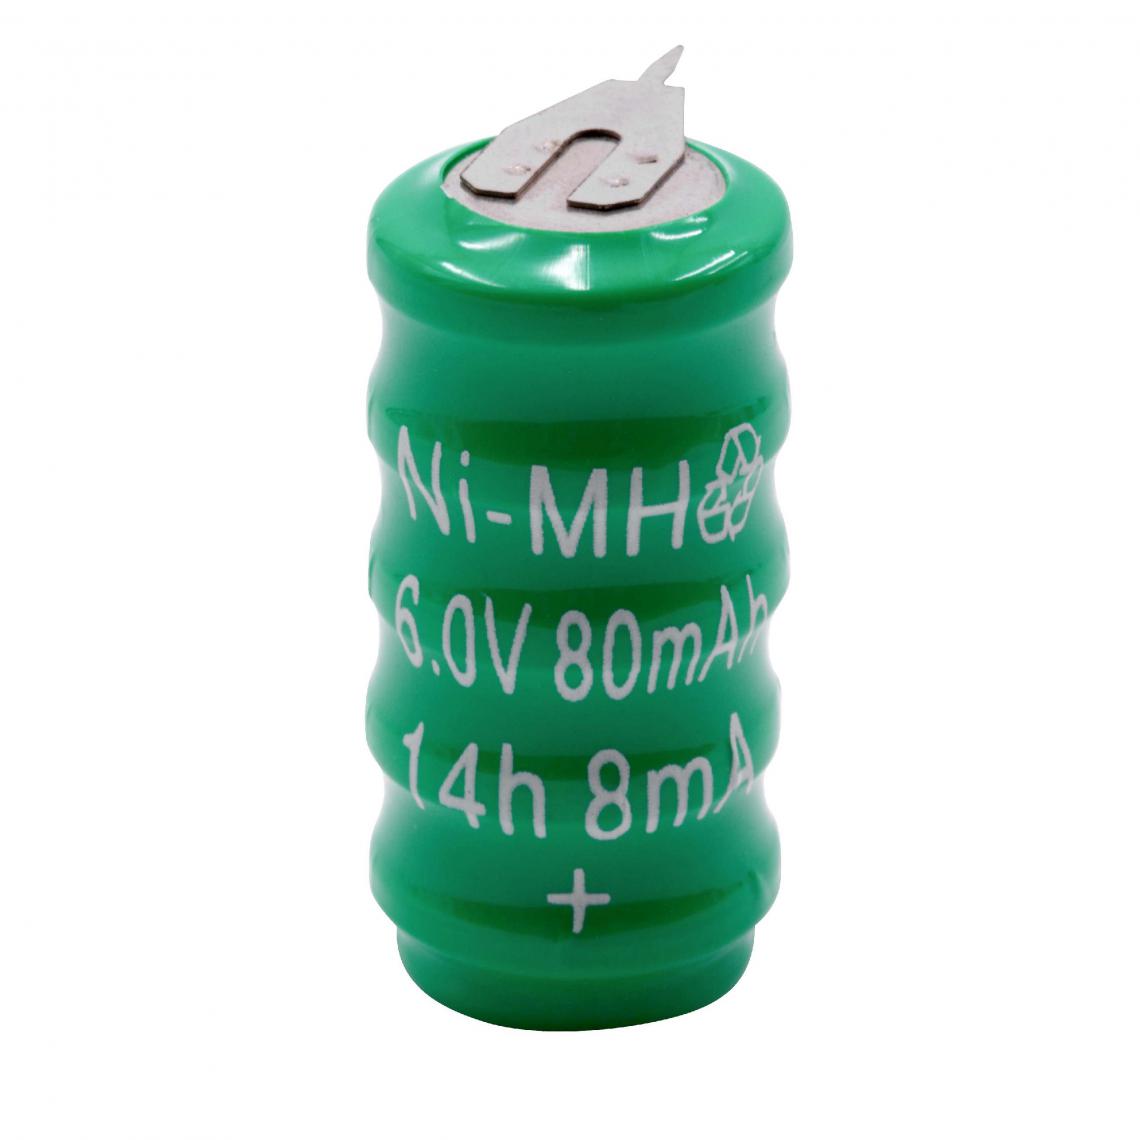 Vhbw - vhbw NiMH pile bouton de remplacement (5x cellule) 2 épingles type V80H 80mAh 6V convient pour les batteries de modélisme etc. - Autre appareil de mesure